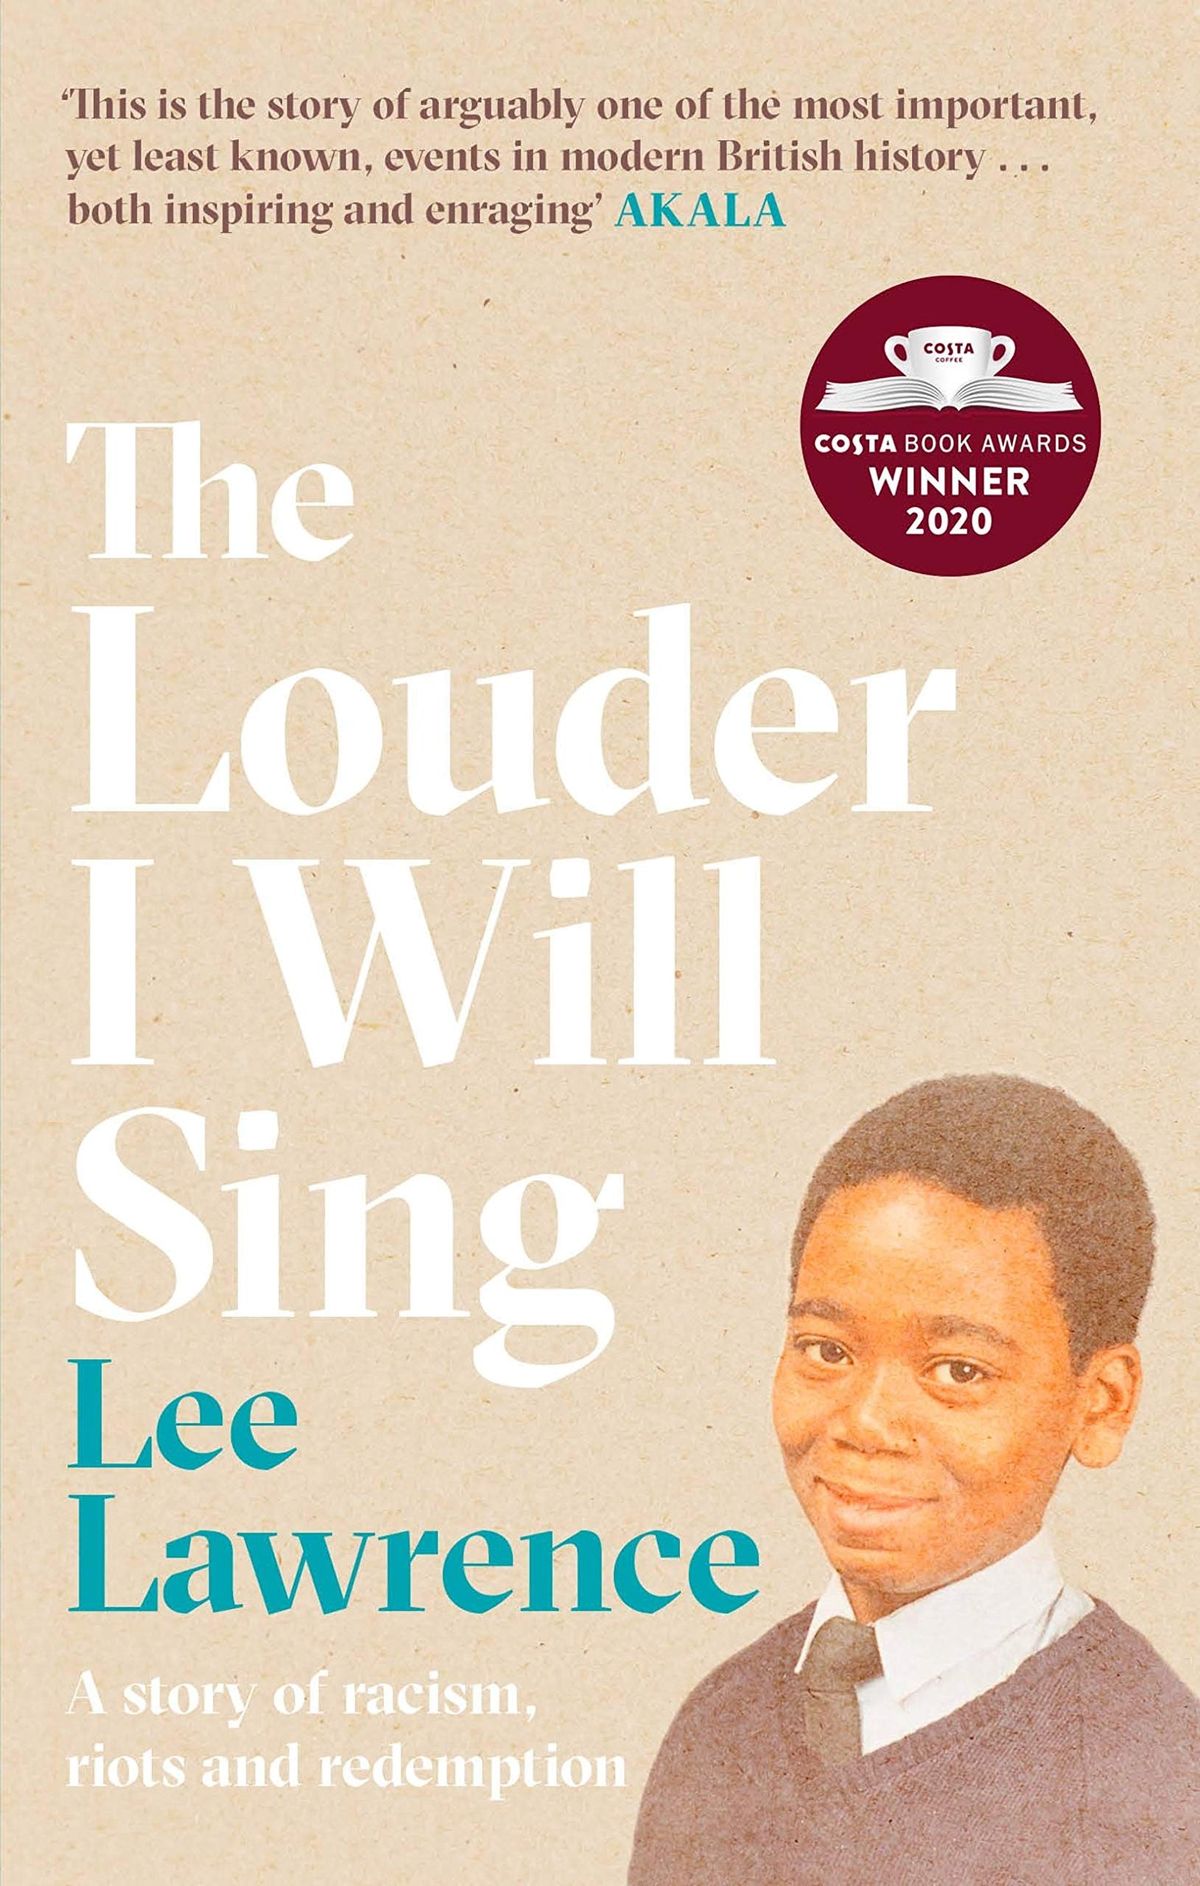 Lo más fuerte que cantaré de Lee Lawrence es una historia de fuerza generacional - EXTRACTO